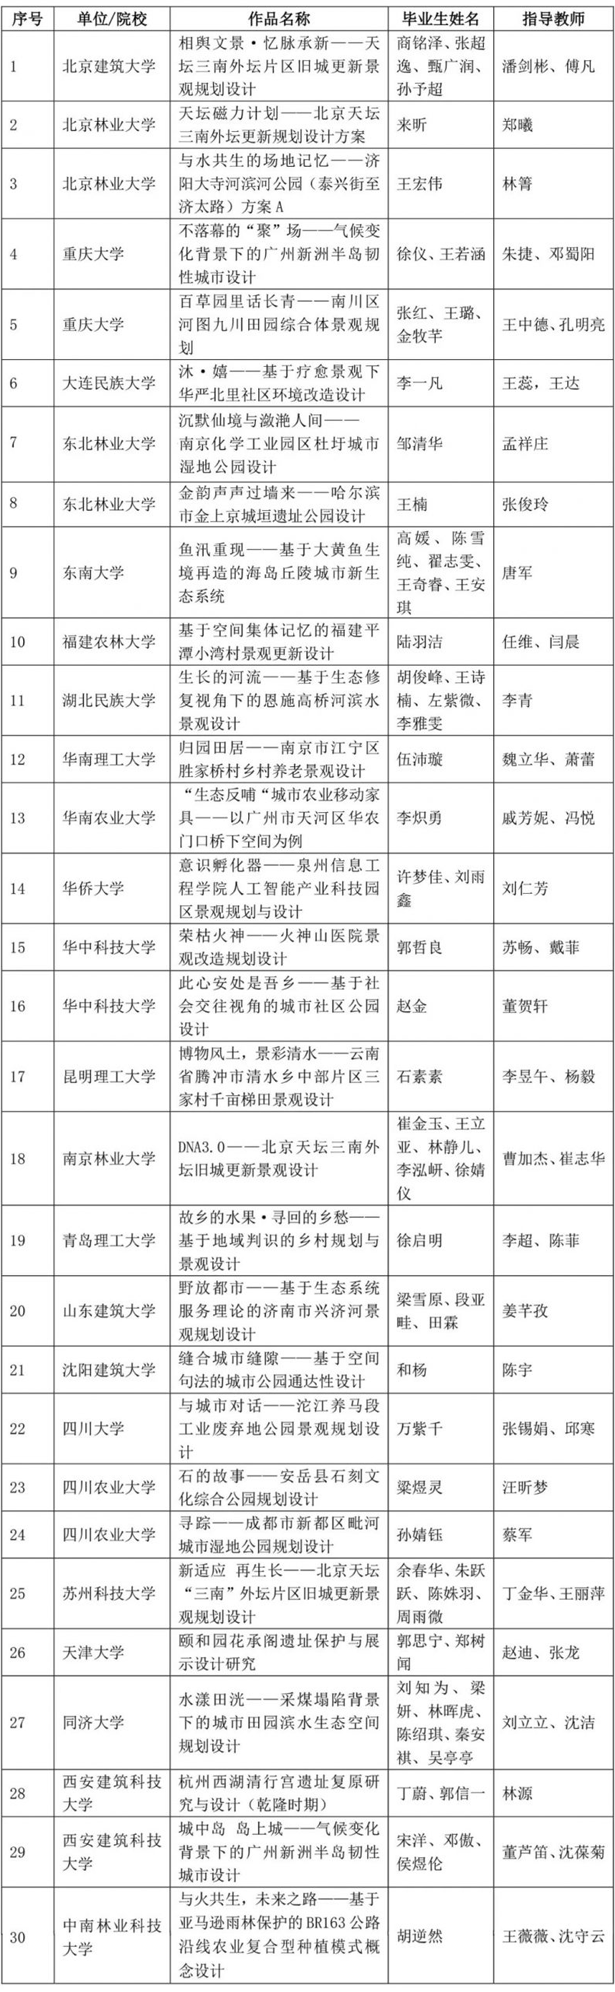 2021年中国风景园林教育大会学生设计竞赛及本科毕业设计征集获奖名单(图5)